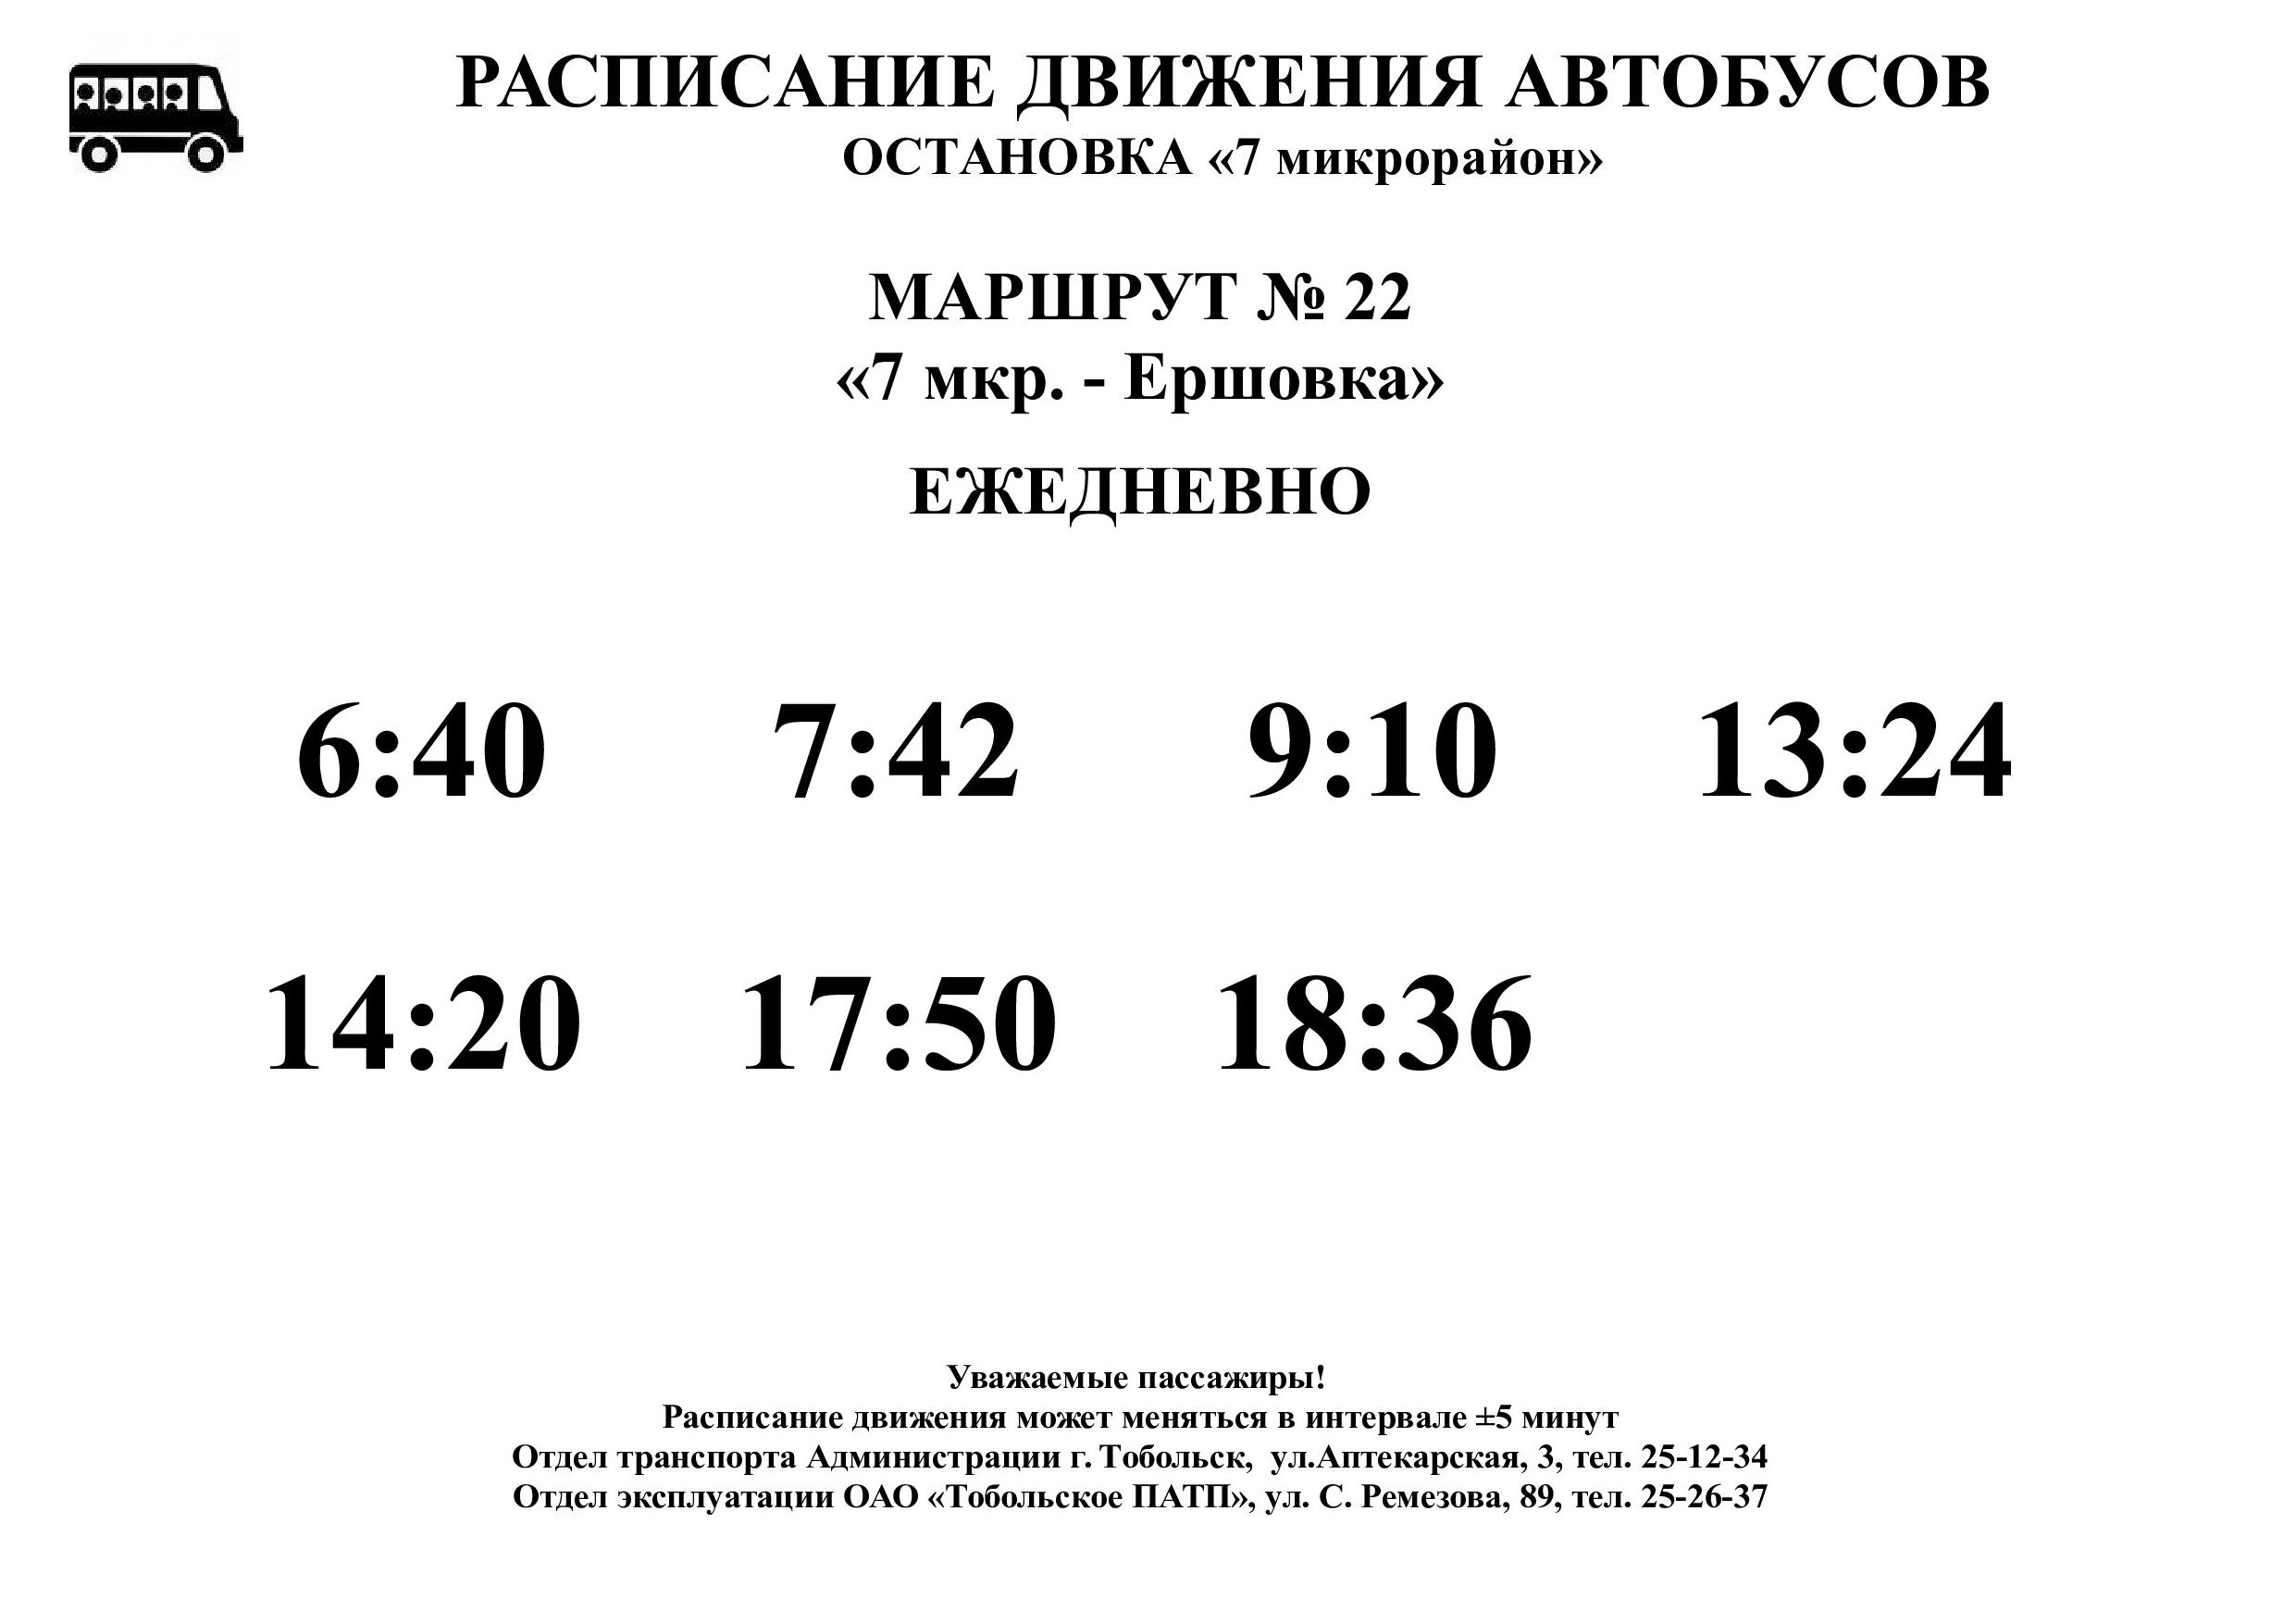 Воткинск да расписание